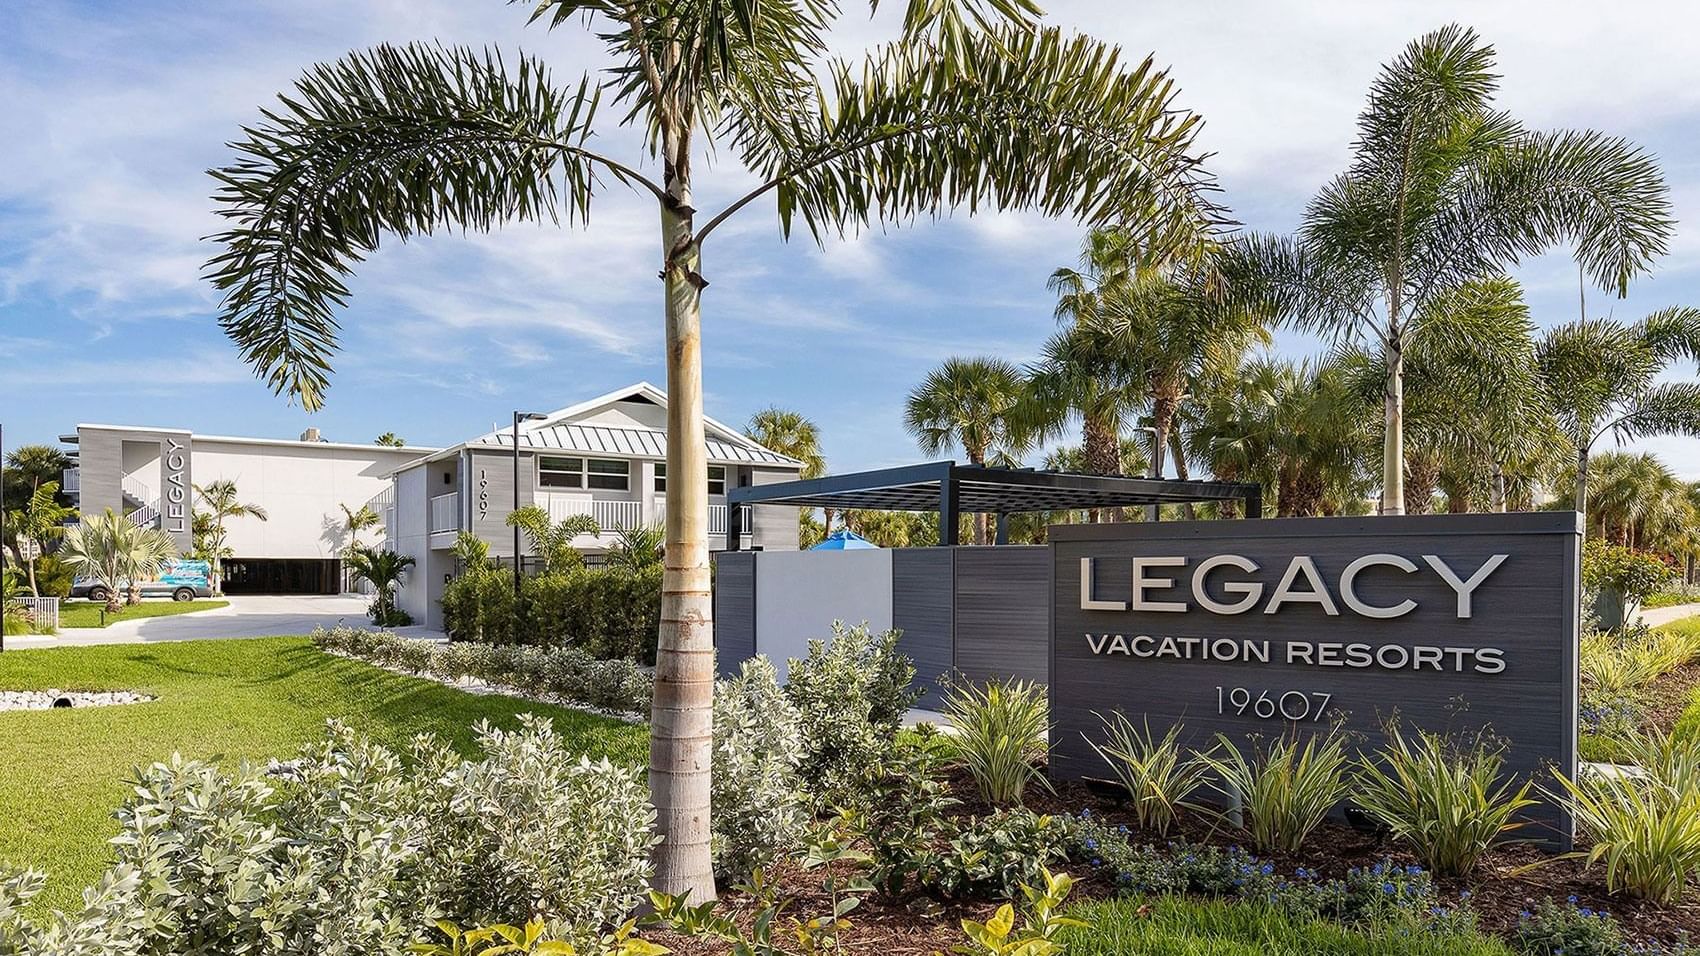  Legacy Vacation Resorts - Legacy Vacation Resorts  